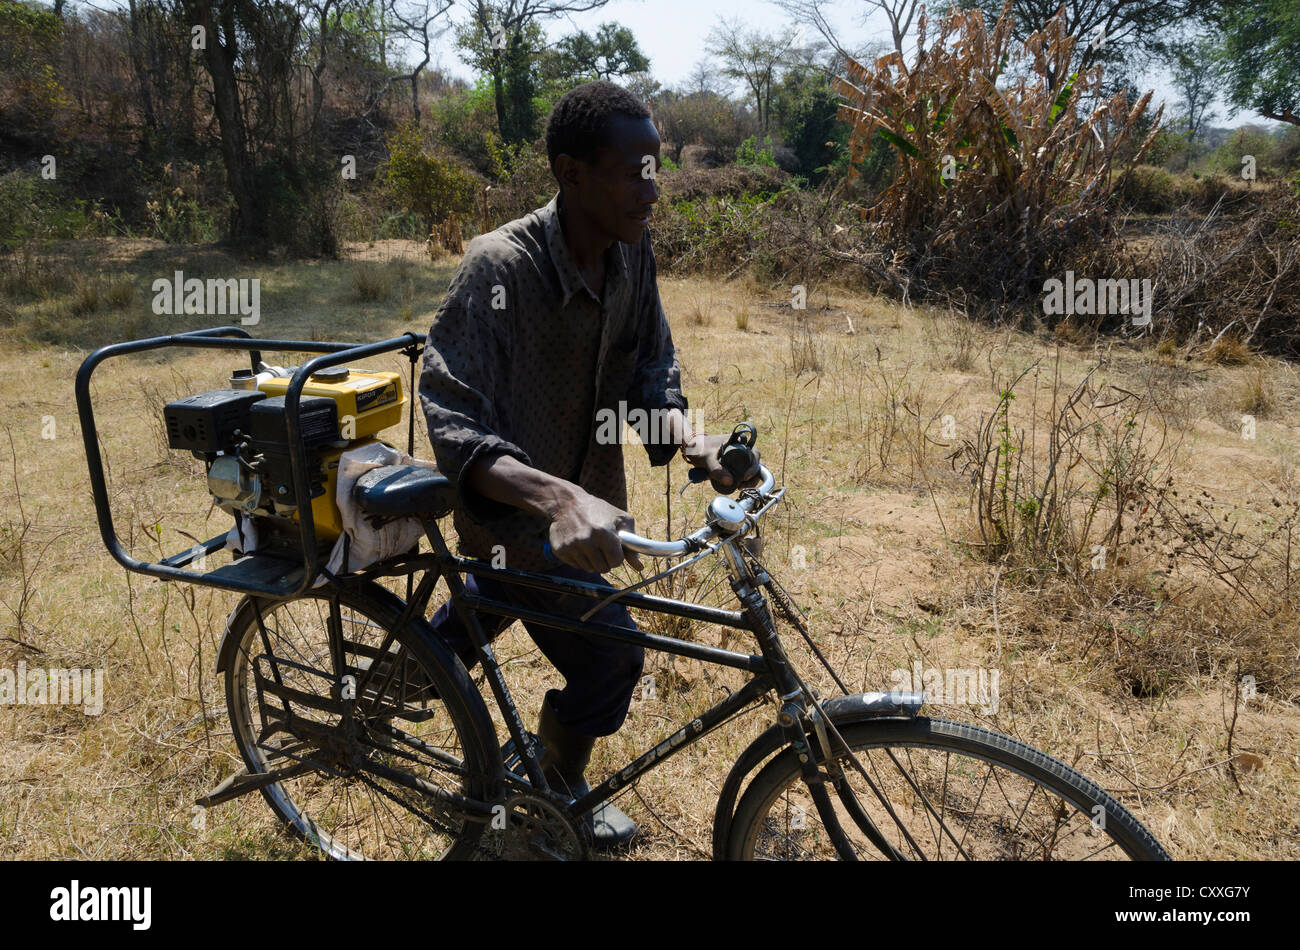 Wirtschaftender Landwirt seine kleine Bewässerung Pumpe auf seinem Fahrrad zu transportieren. Monze Bereich. Sambia. Stockfoto